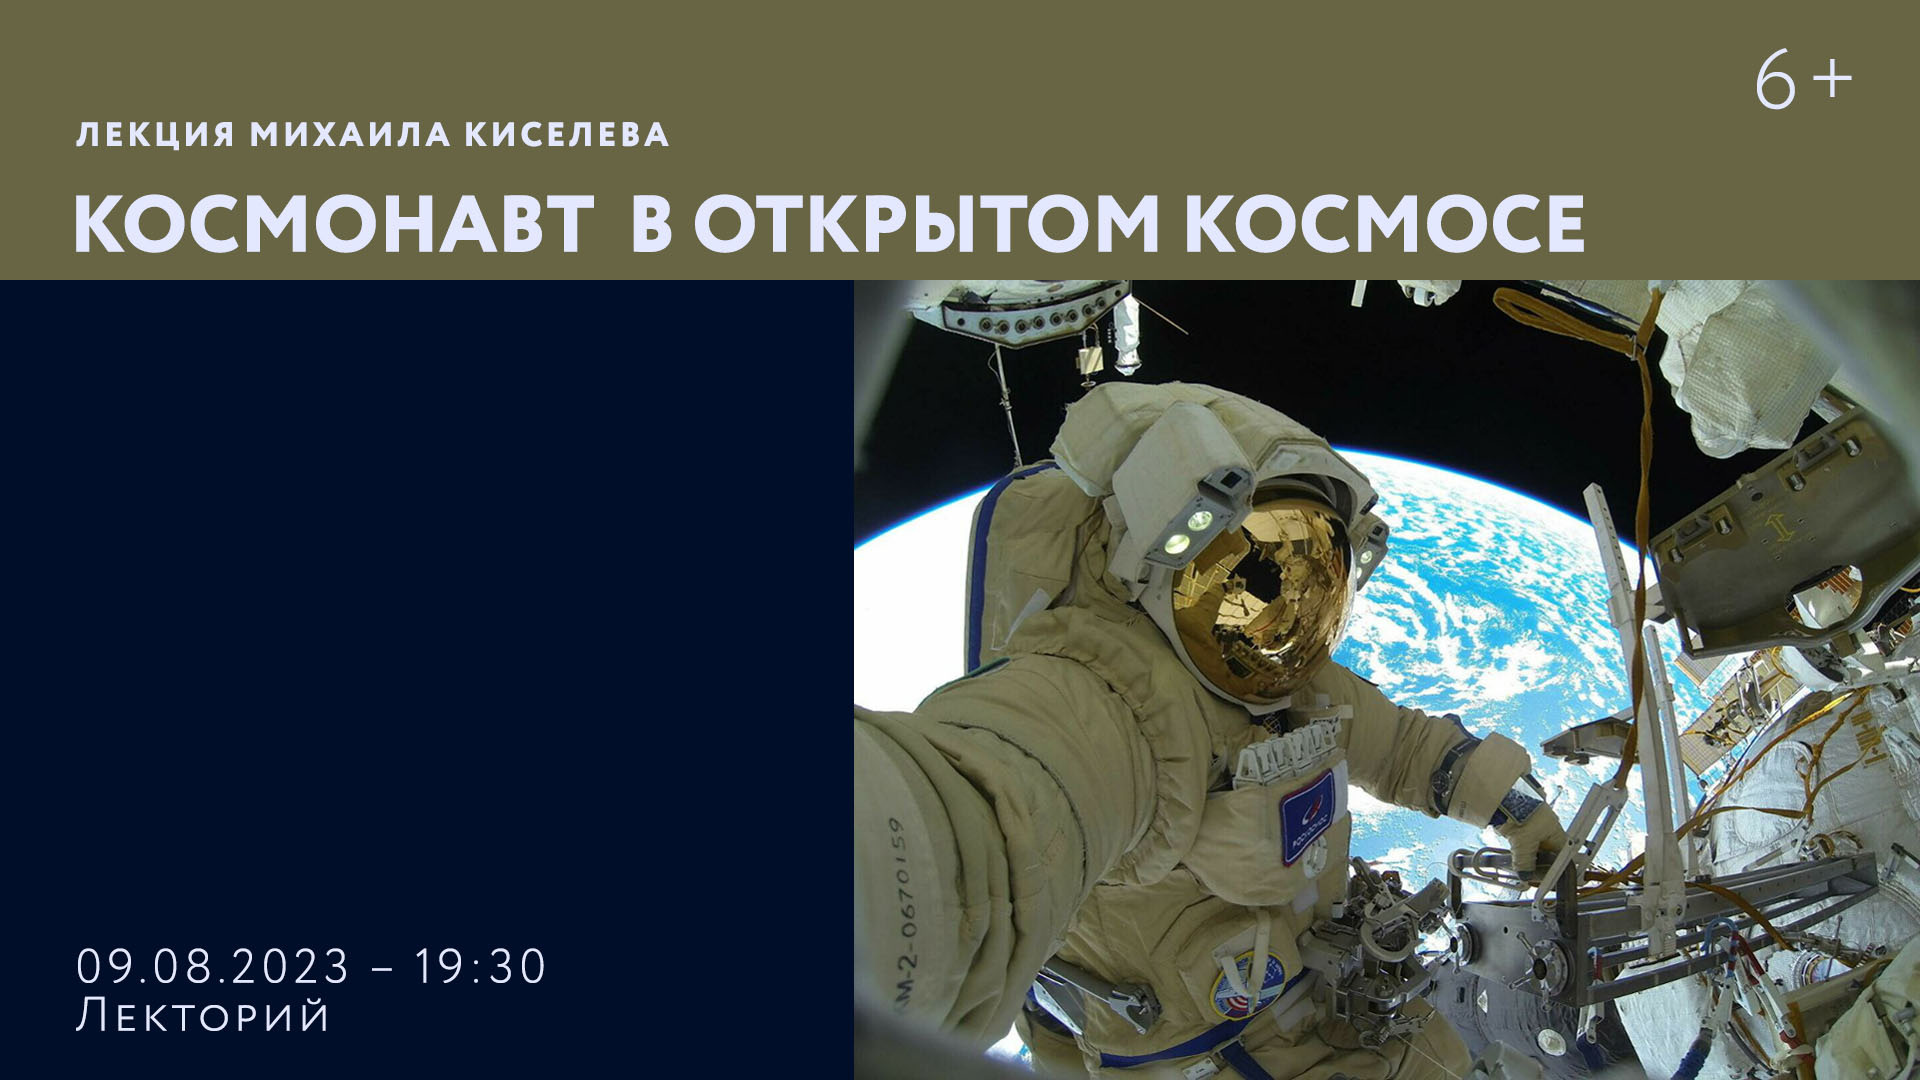 Лекция Михаила Киселева «Космонавт в открытом космосе»